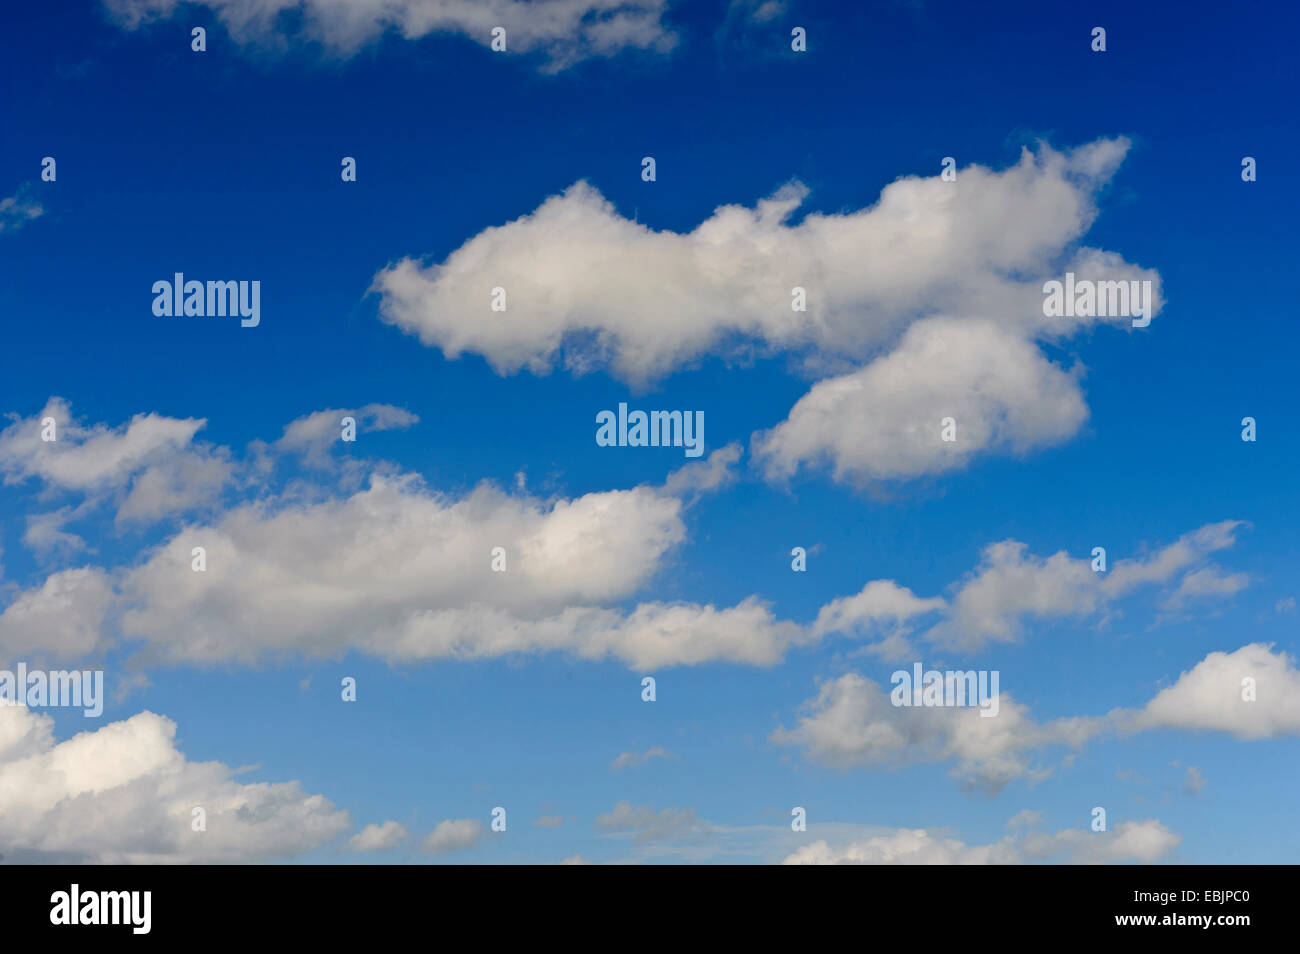 cloudy sky, Germany, Lower Saxony Stock Photo